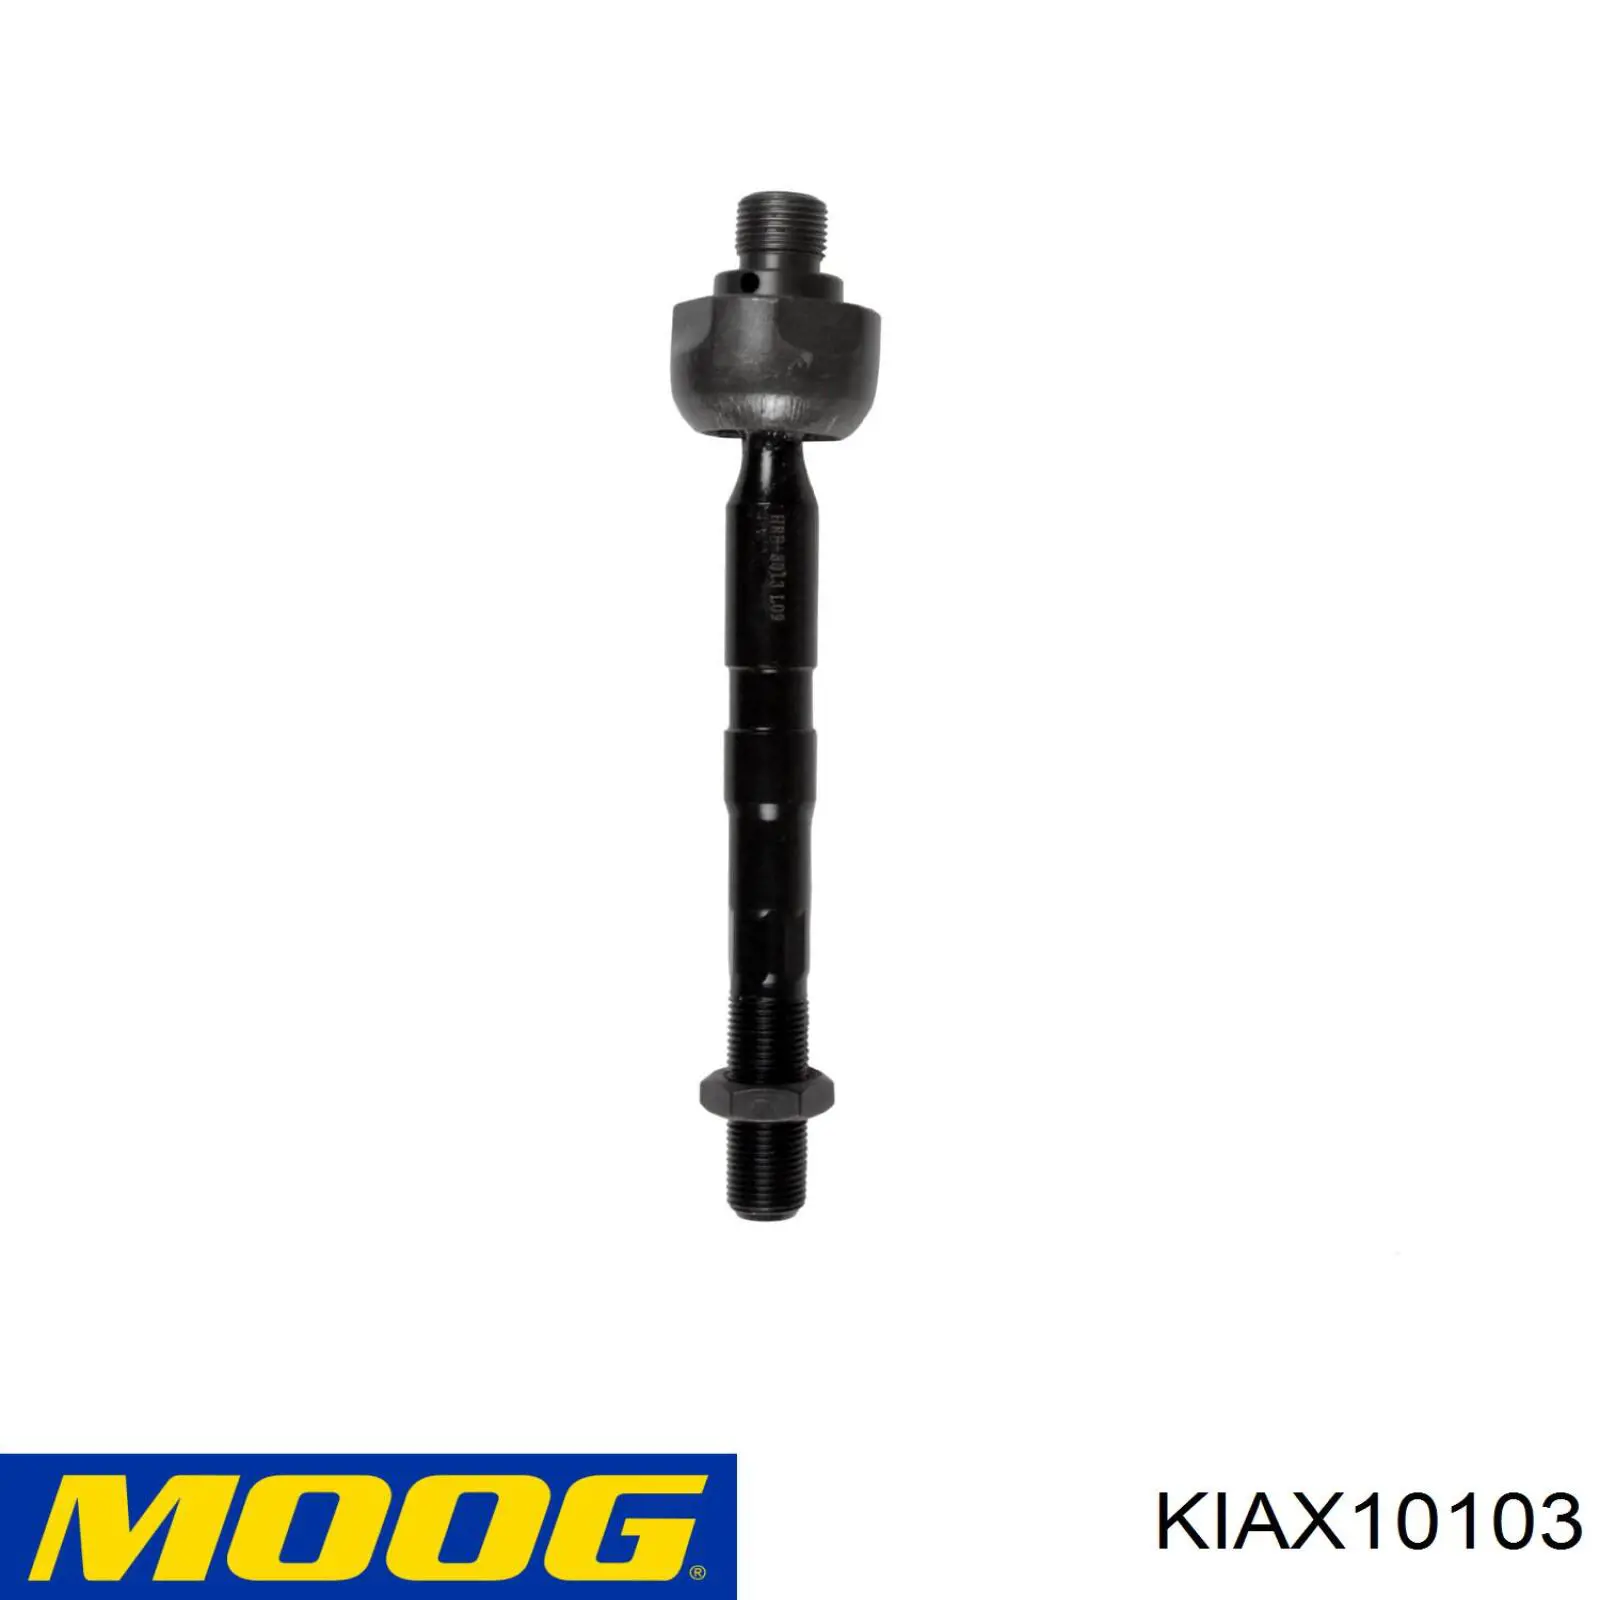 KIAX10103 Moog barra de acoplamiento derecha